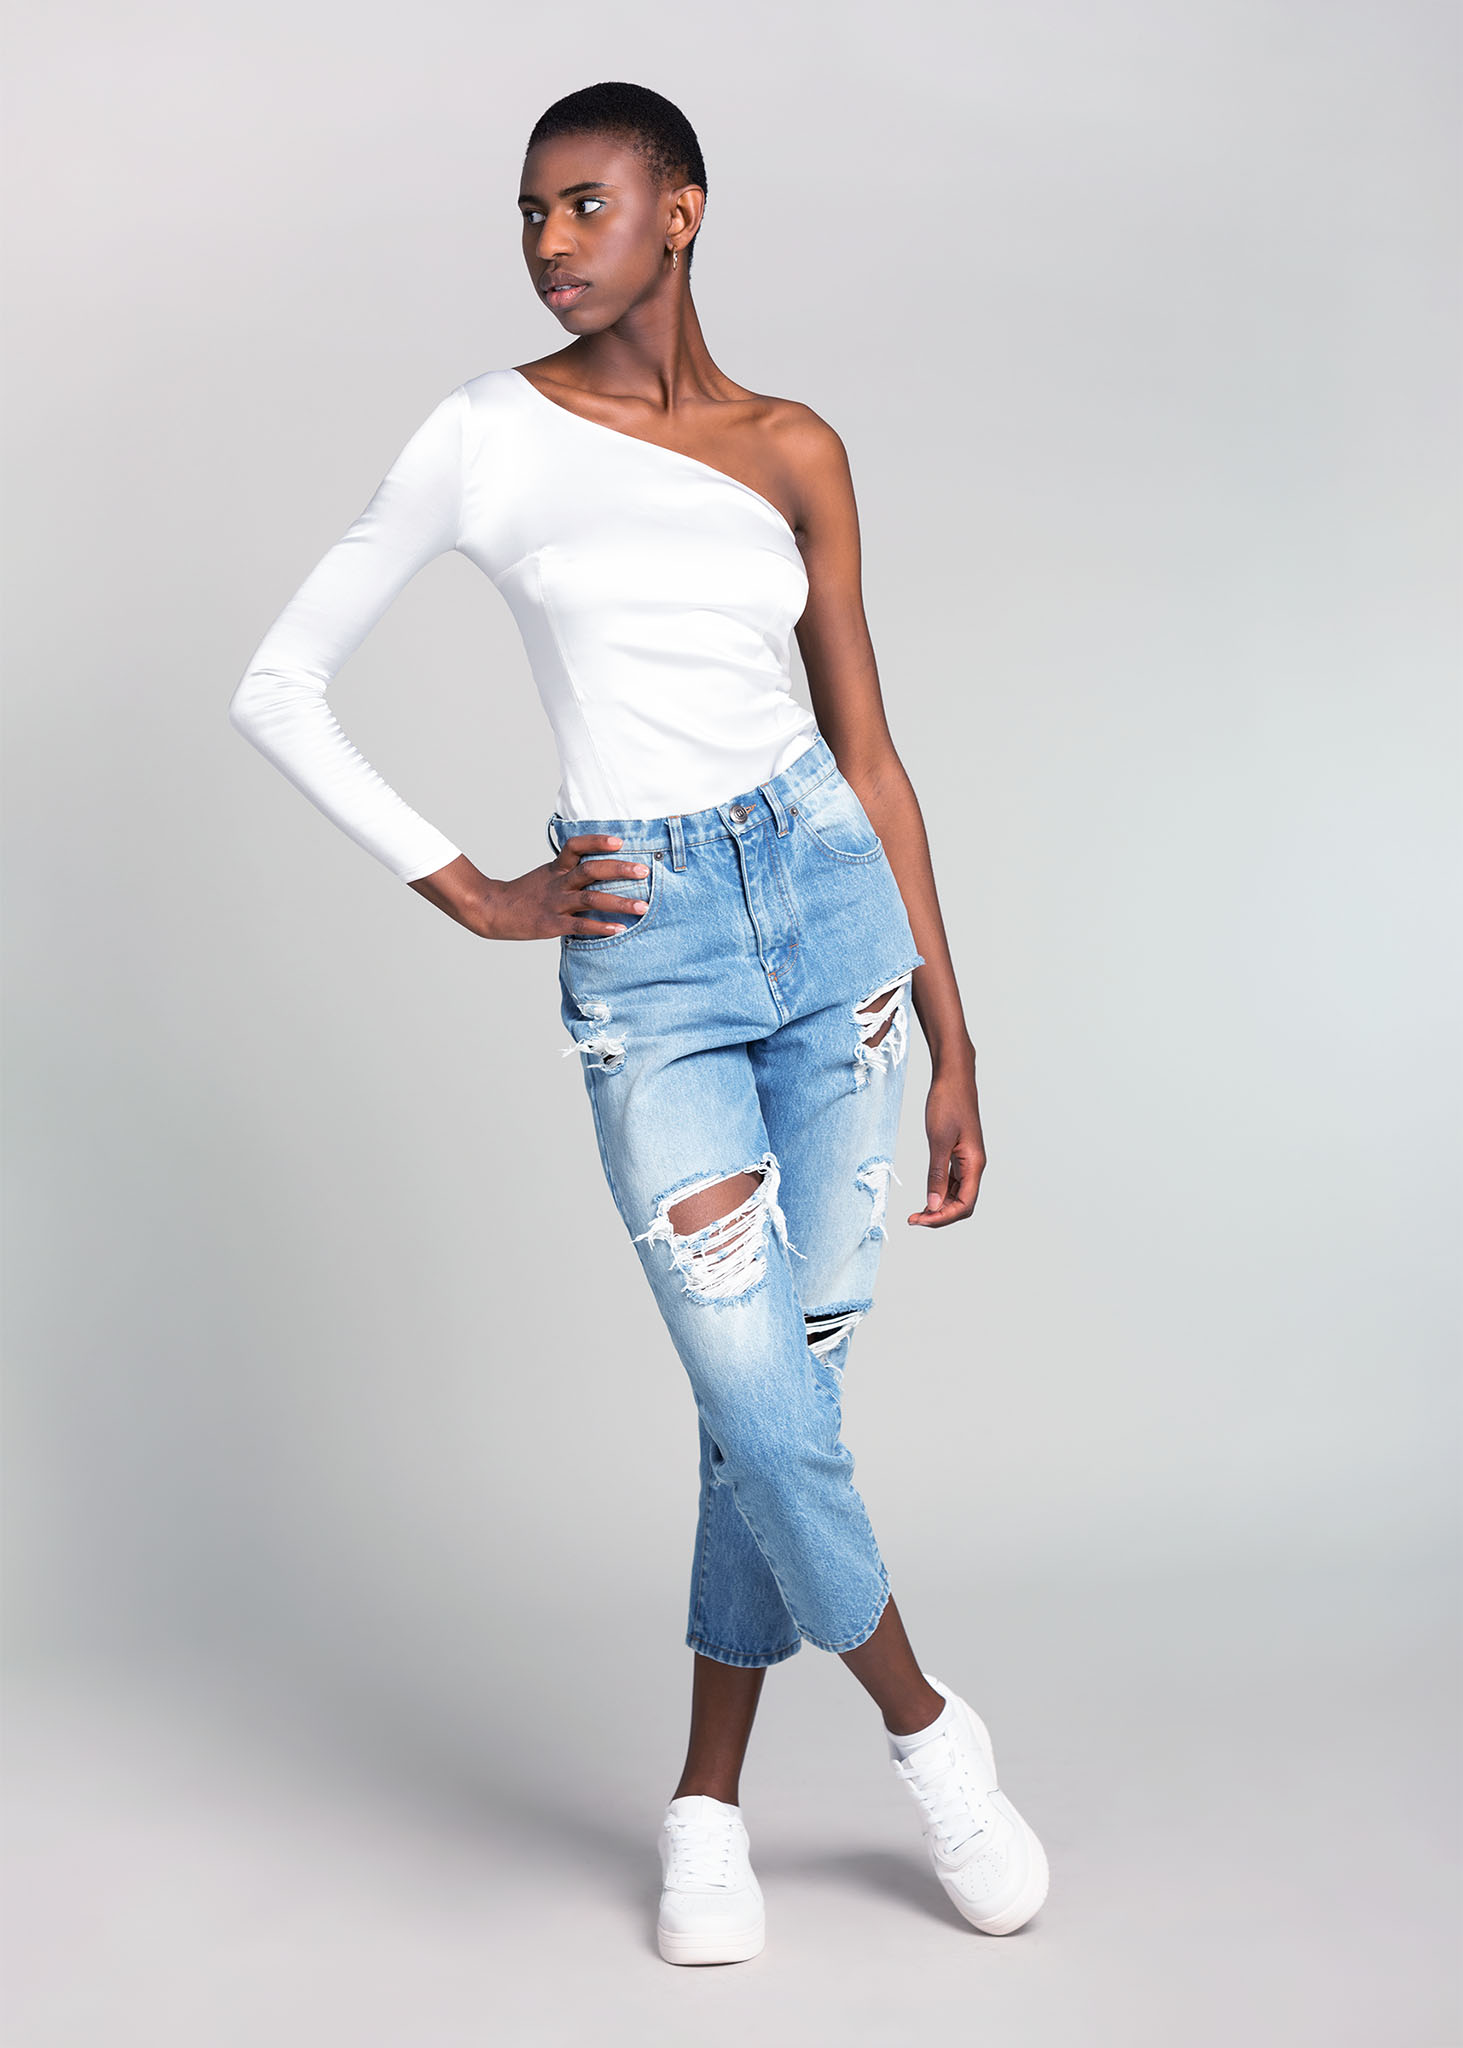 Fashion Model aus Köln für Online Shops in blauer Hose und weißem Top